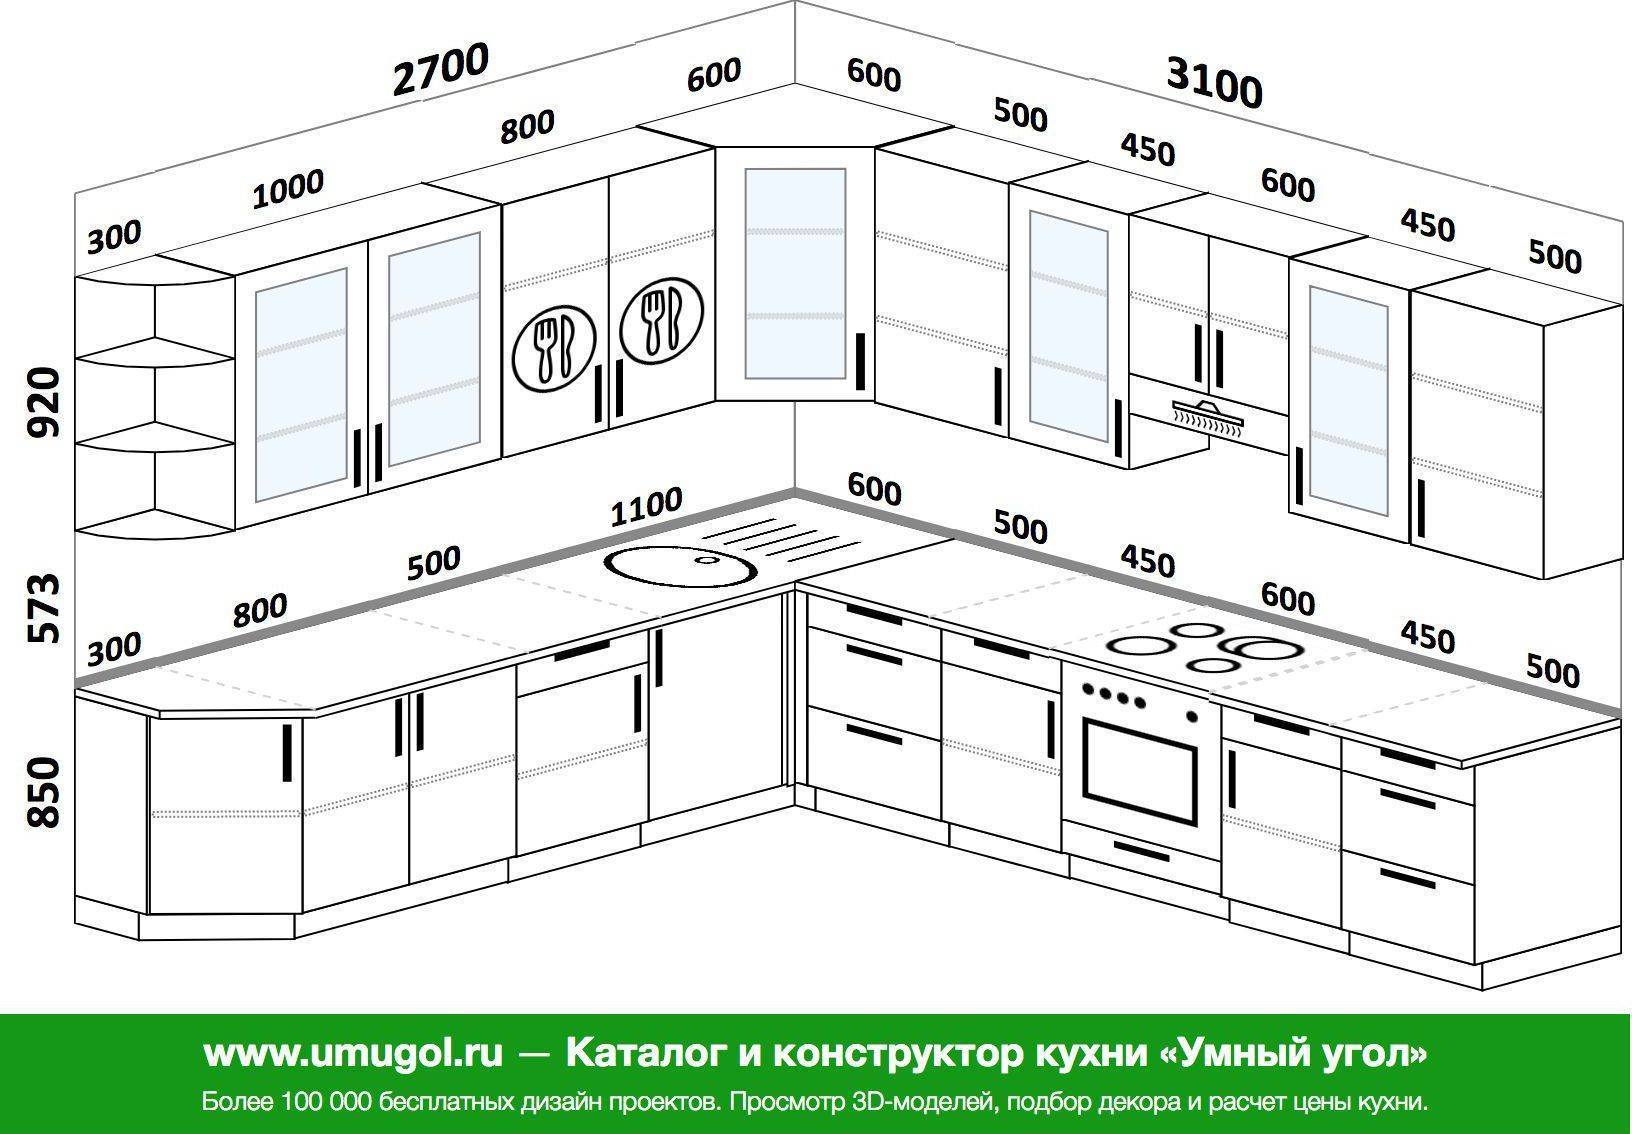 Размеры кухонных шкафов — глубина, ширина, высота модулей